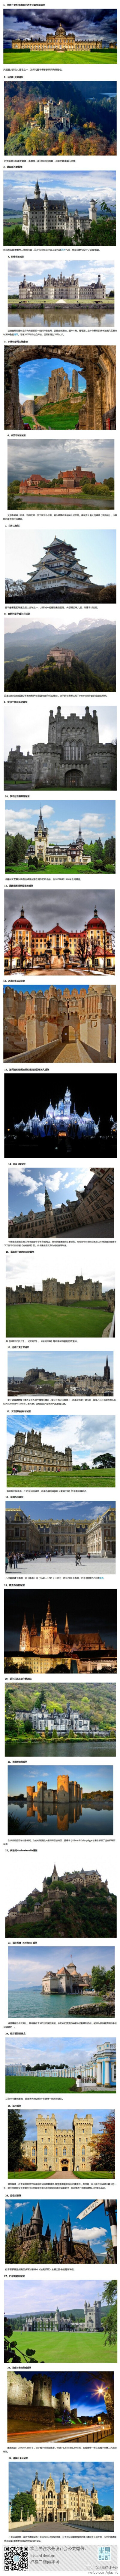 #求是爱摄影#环游世界29座华丽的城堡